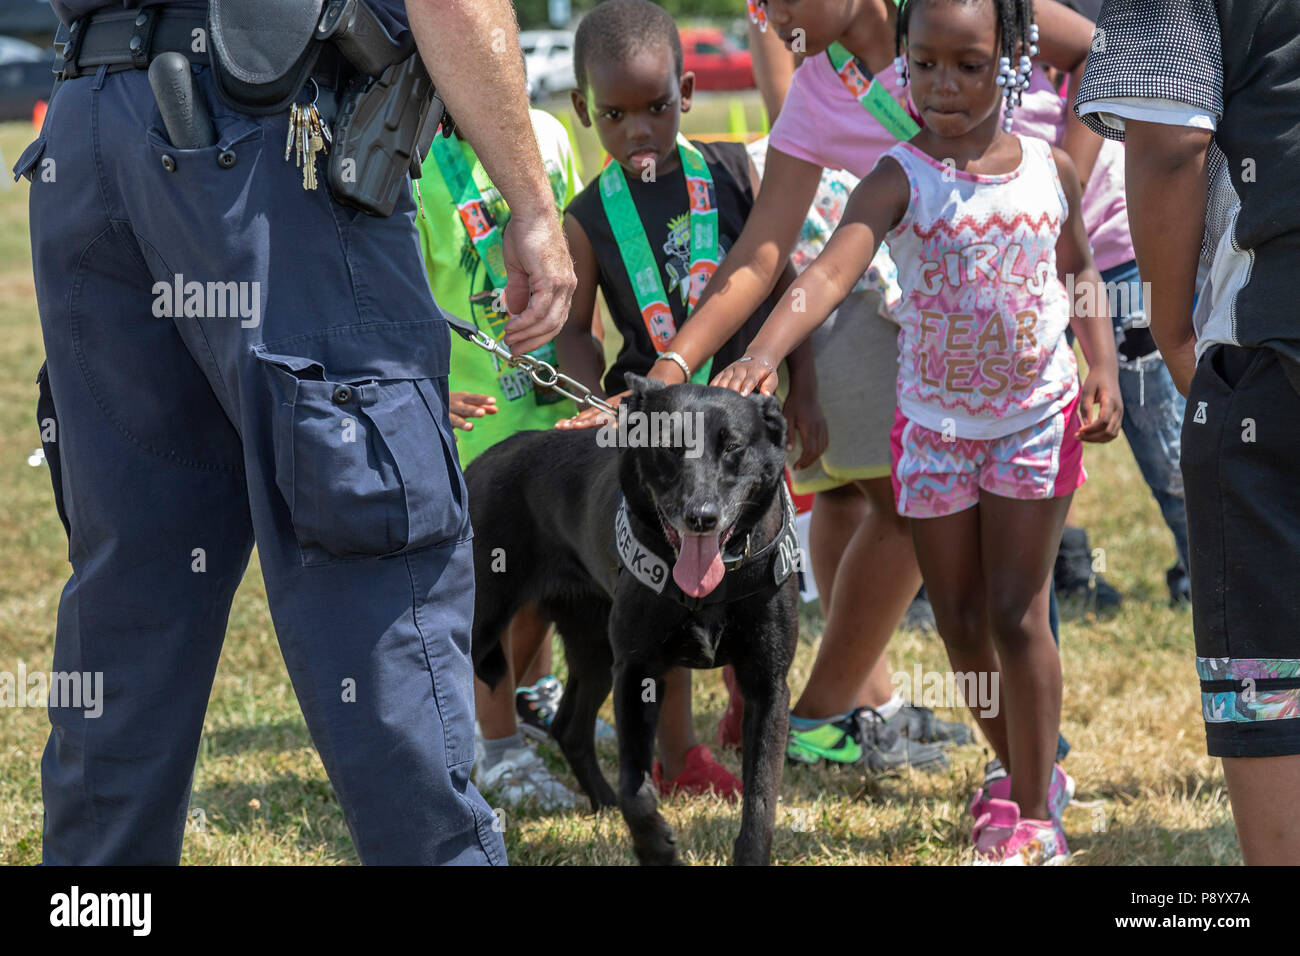 Detroit, Michigan - EIN U.S.-Zoll- und Grenzschutzbehörde Offizier seinen Hund, Buddy zeigt, zu den Kindern an der Metro Detroit Tag der Jugend. Buddy ist ausgebildete Det Stockfoto